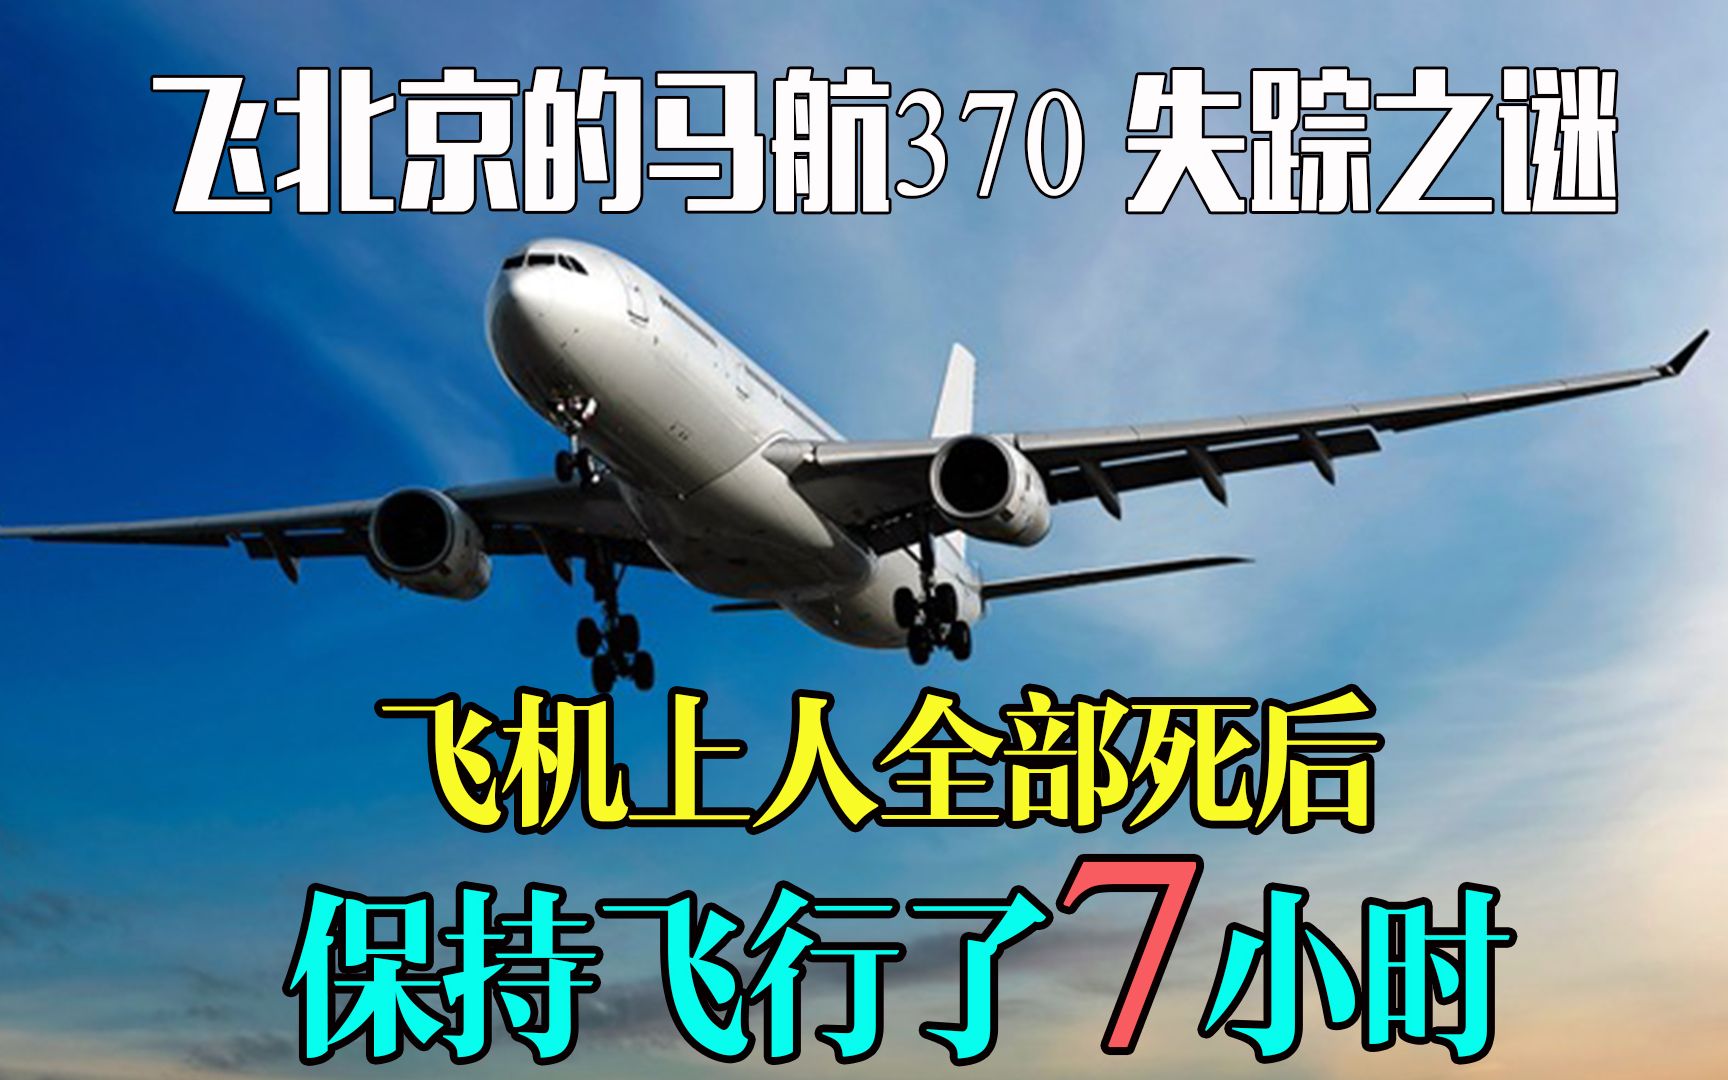 飞往北京的马航370班机，客机上人死后，竟又飞了7小时《空中浩劫》